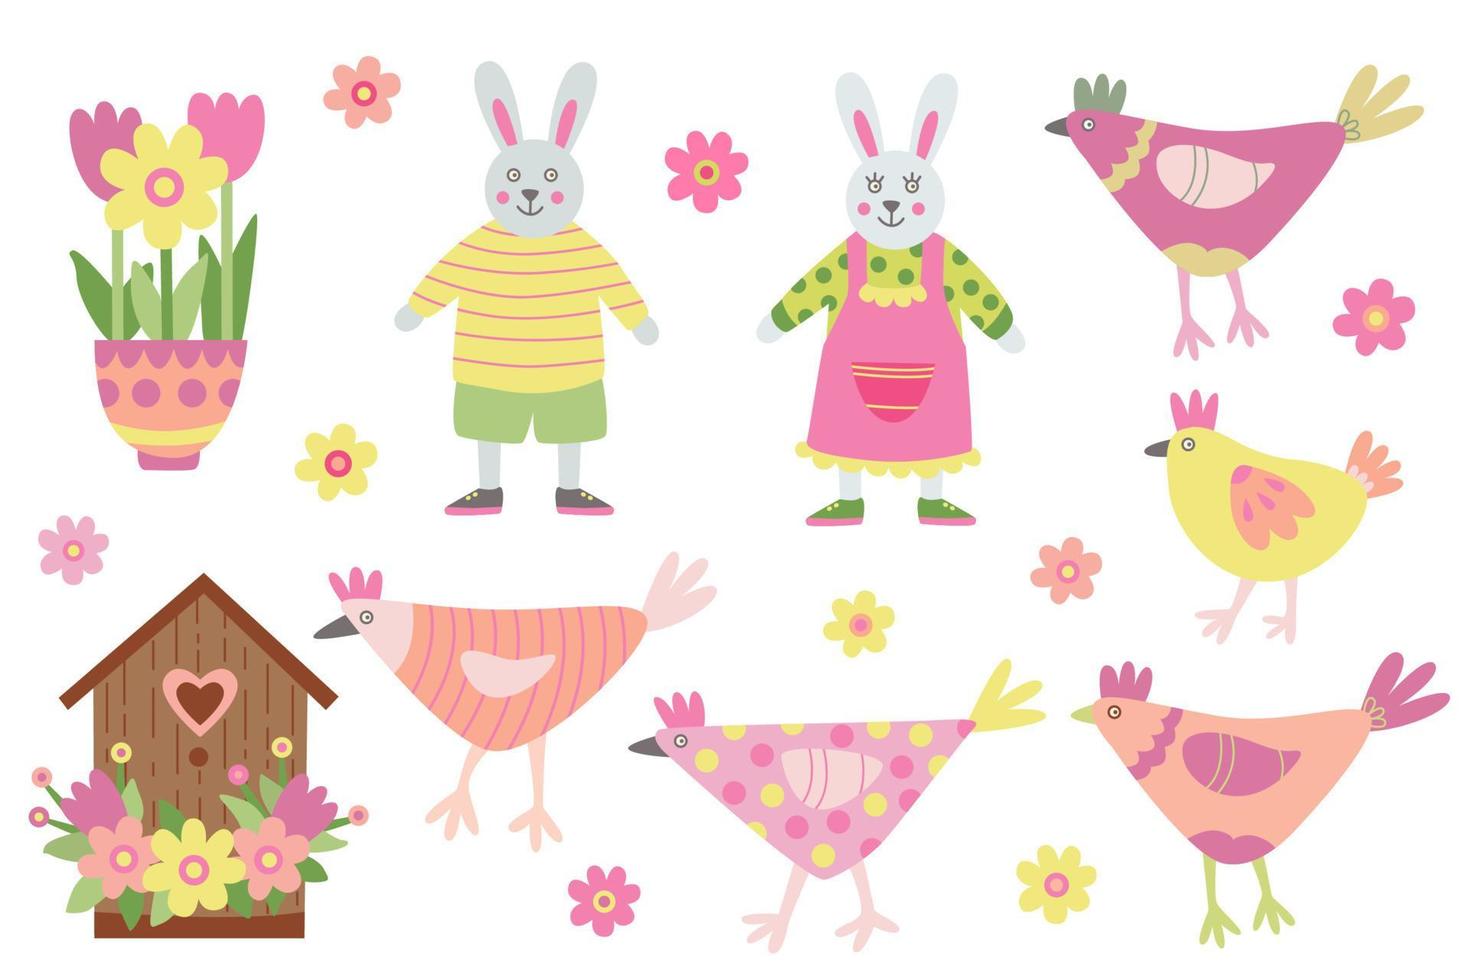 ambientado con lindos animales. gallinas divertidas, conejos o conejitos y flores de margarita. ilustración plana dibujada a mano de primavera. genial para el diseño de Pascua. vector